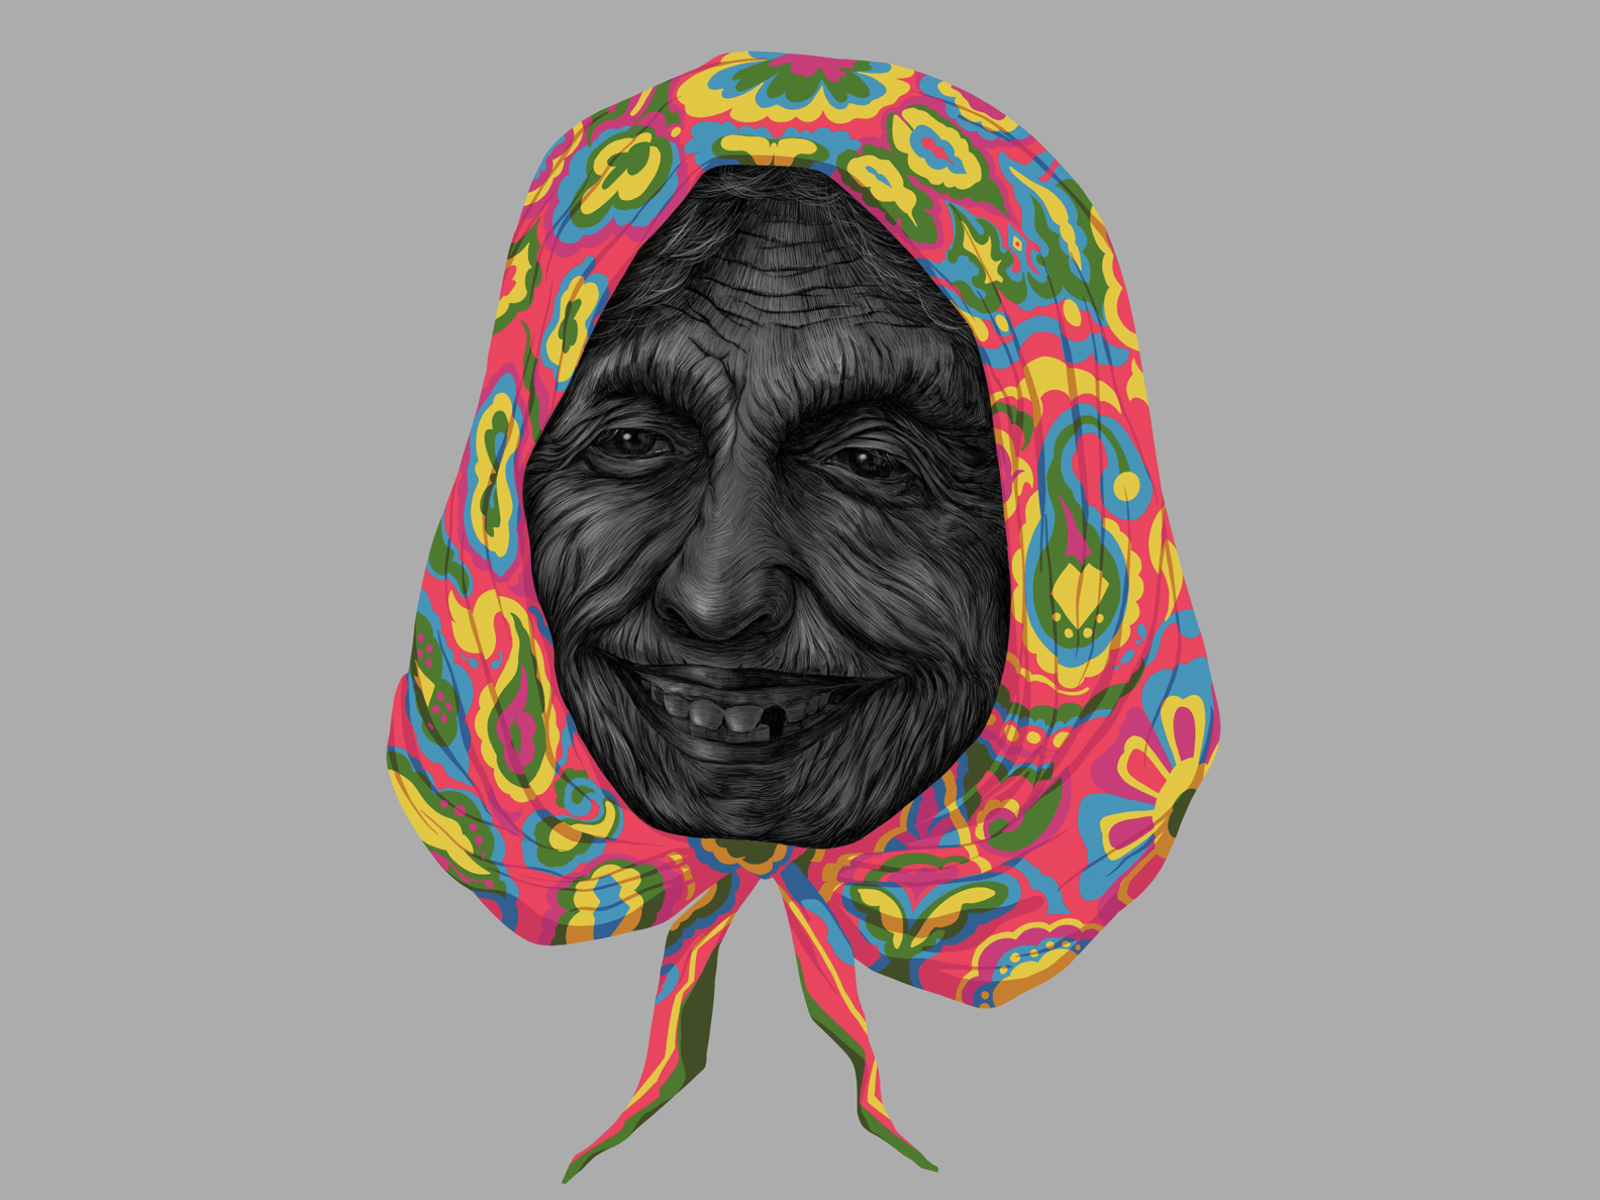 Veil art design experiments illustration india kerala portrait sajid